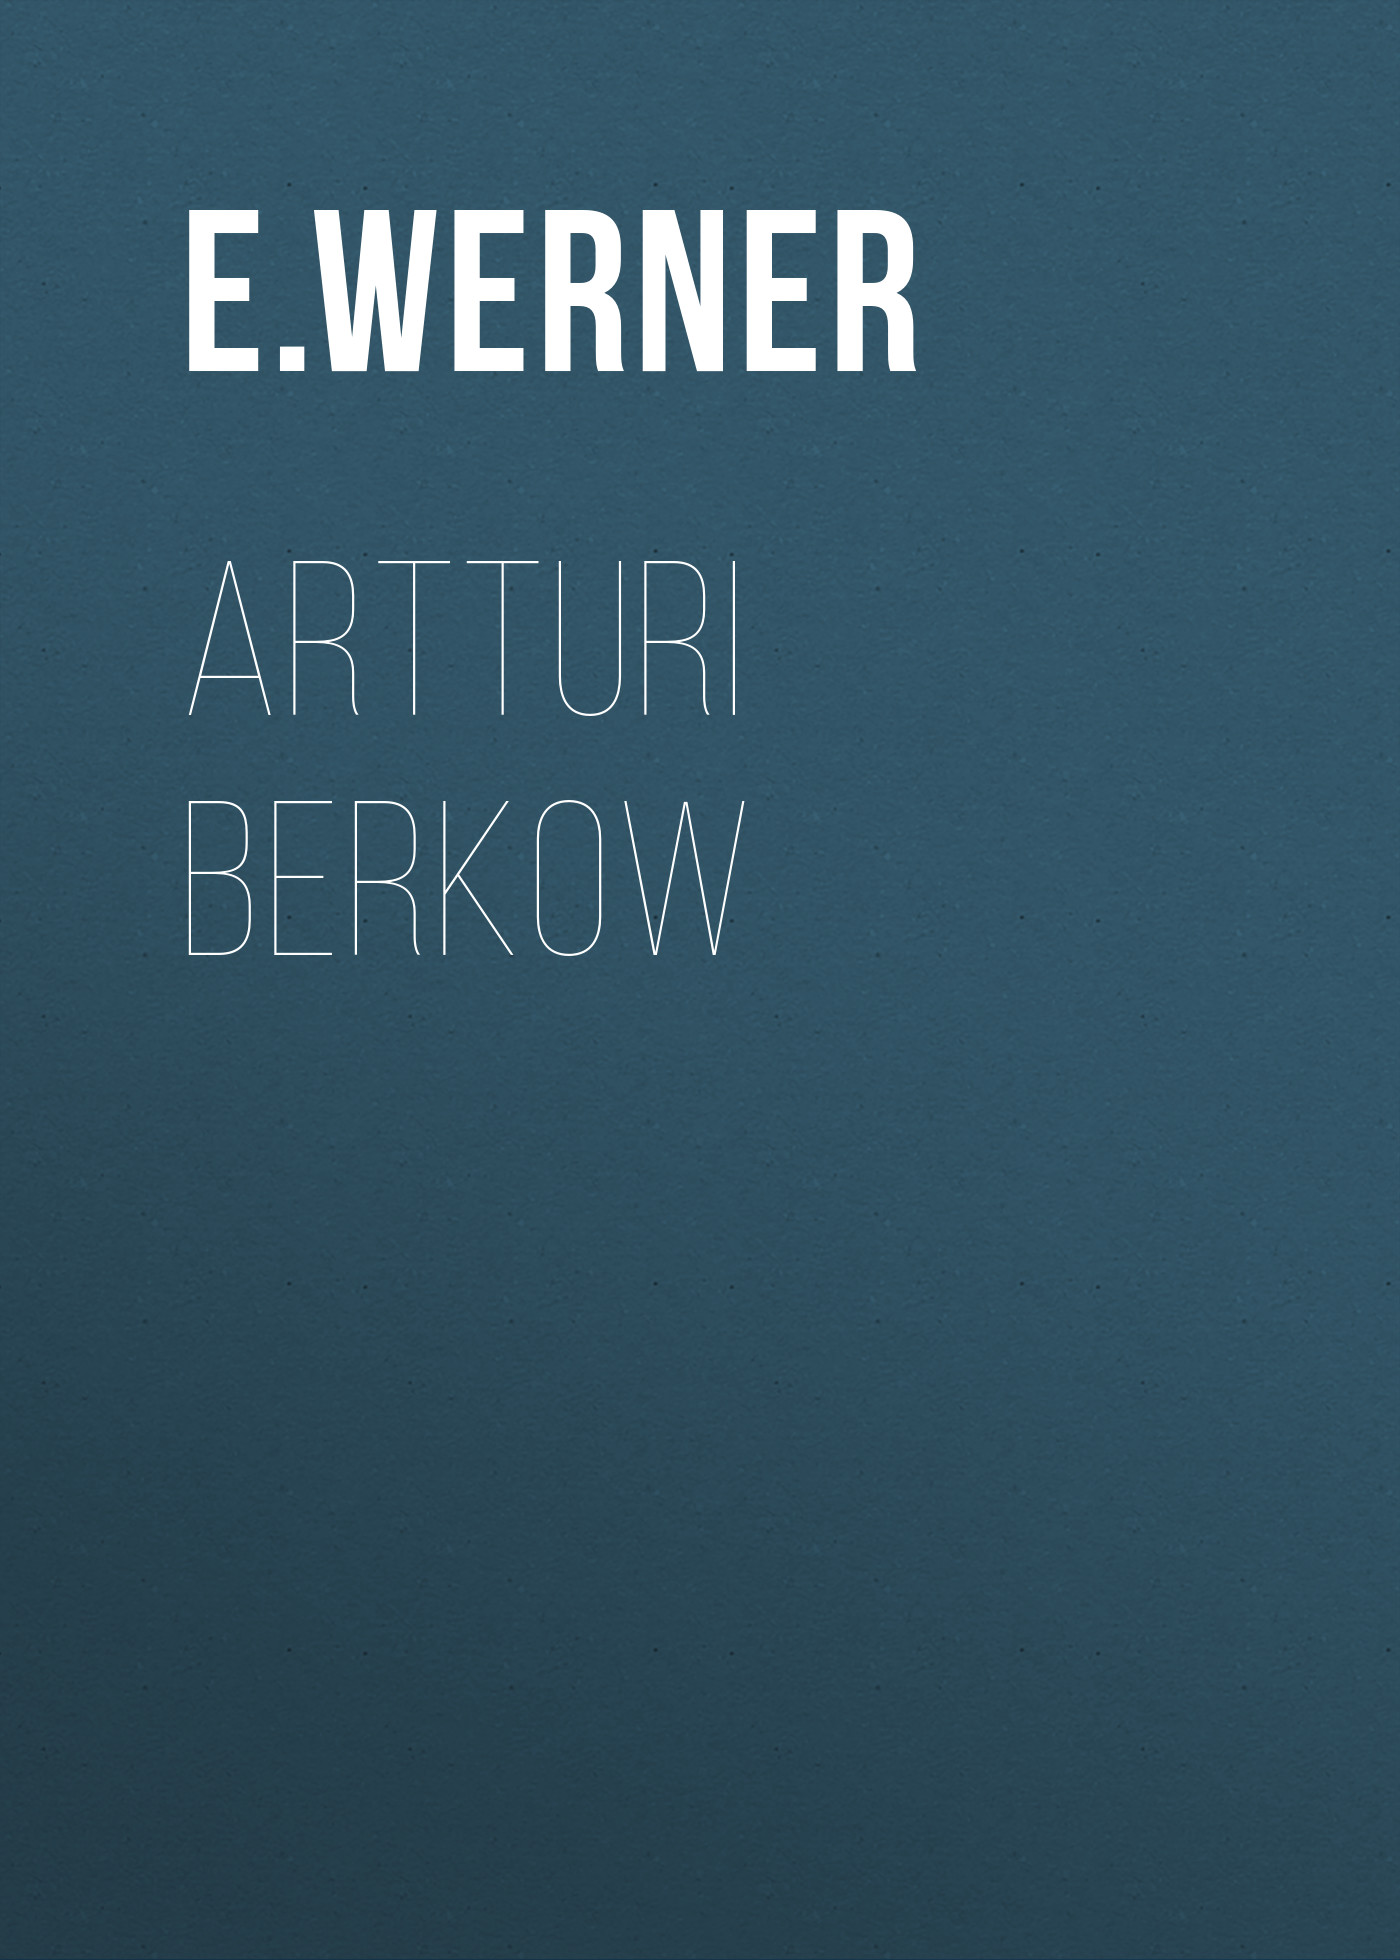 Книга Artturi Berkow из серии , созданная E. Werner, может относится к жанру Зарубежная классика, Зарубежная старинная литература. Стоимость электронной книги Artturi Berkow с идентификатором 34337634 составляет 0 руб.